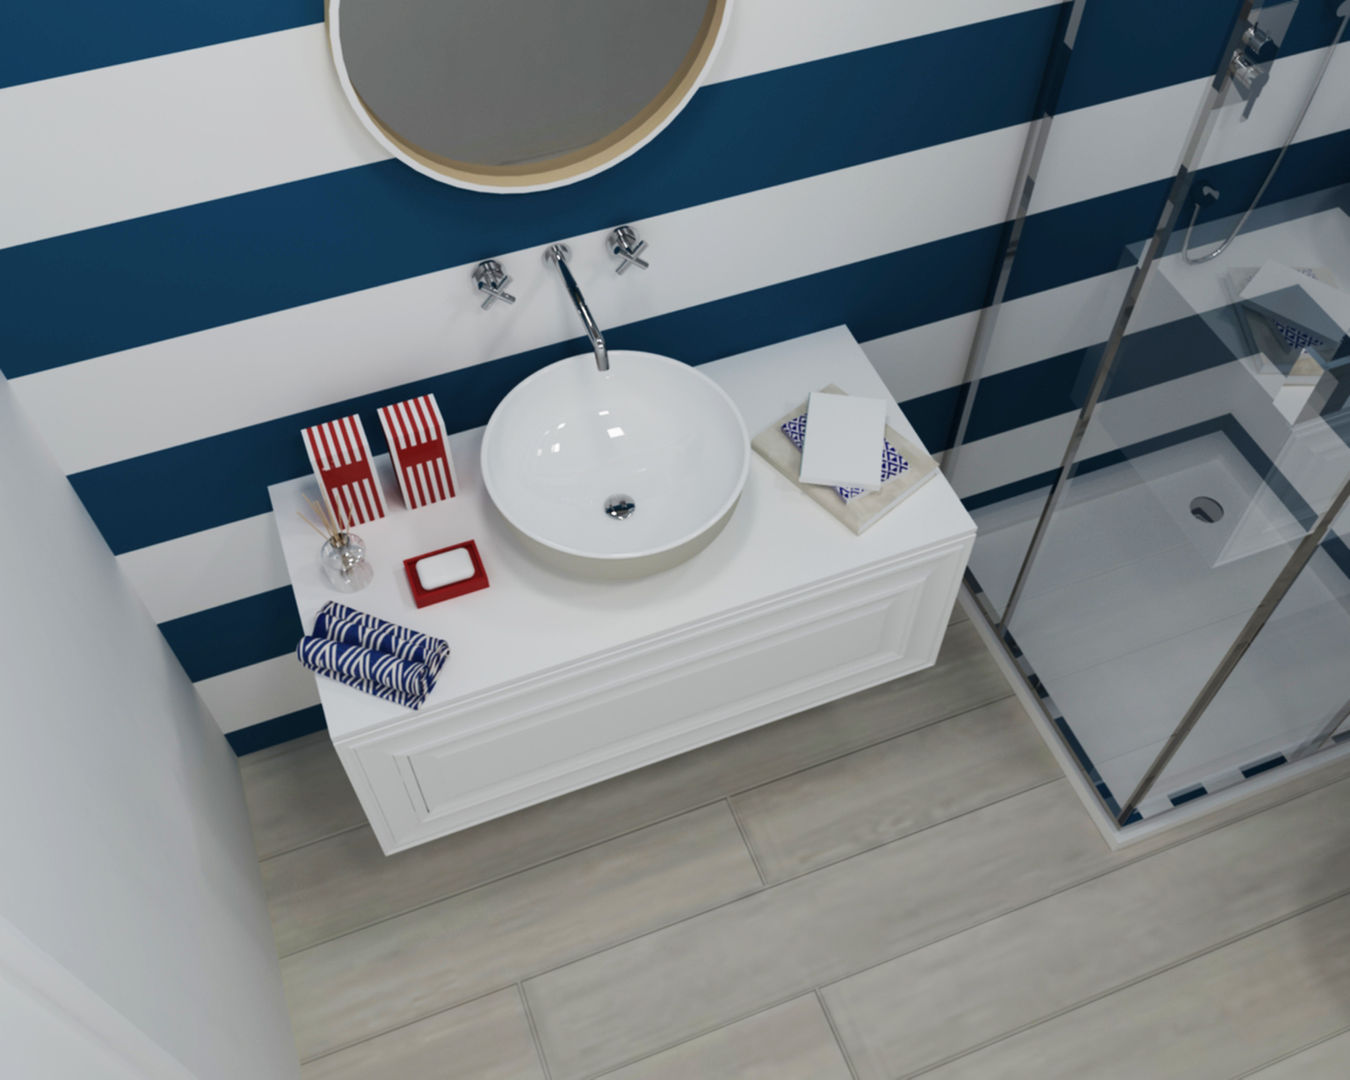 Ambientes 3D de casas de banho Smile Bath, Smile Bath S.A. Smile Bath S.A. Casas de banho modernas móvel comfy,lavatório open bege,torneira lisa parede,móvel suspenso,lacado,branco,azul,chão madeira,torneira parede